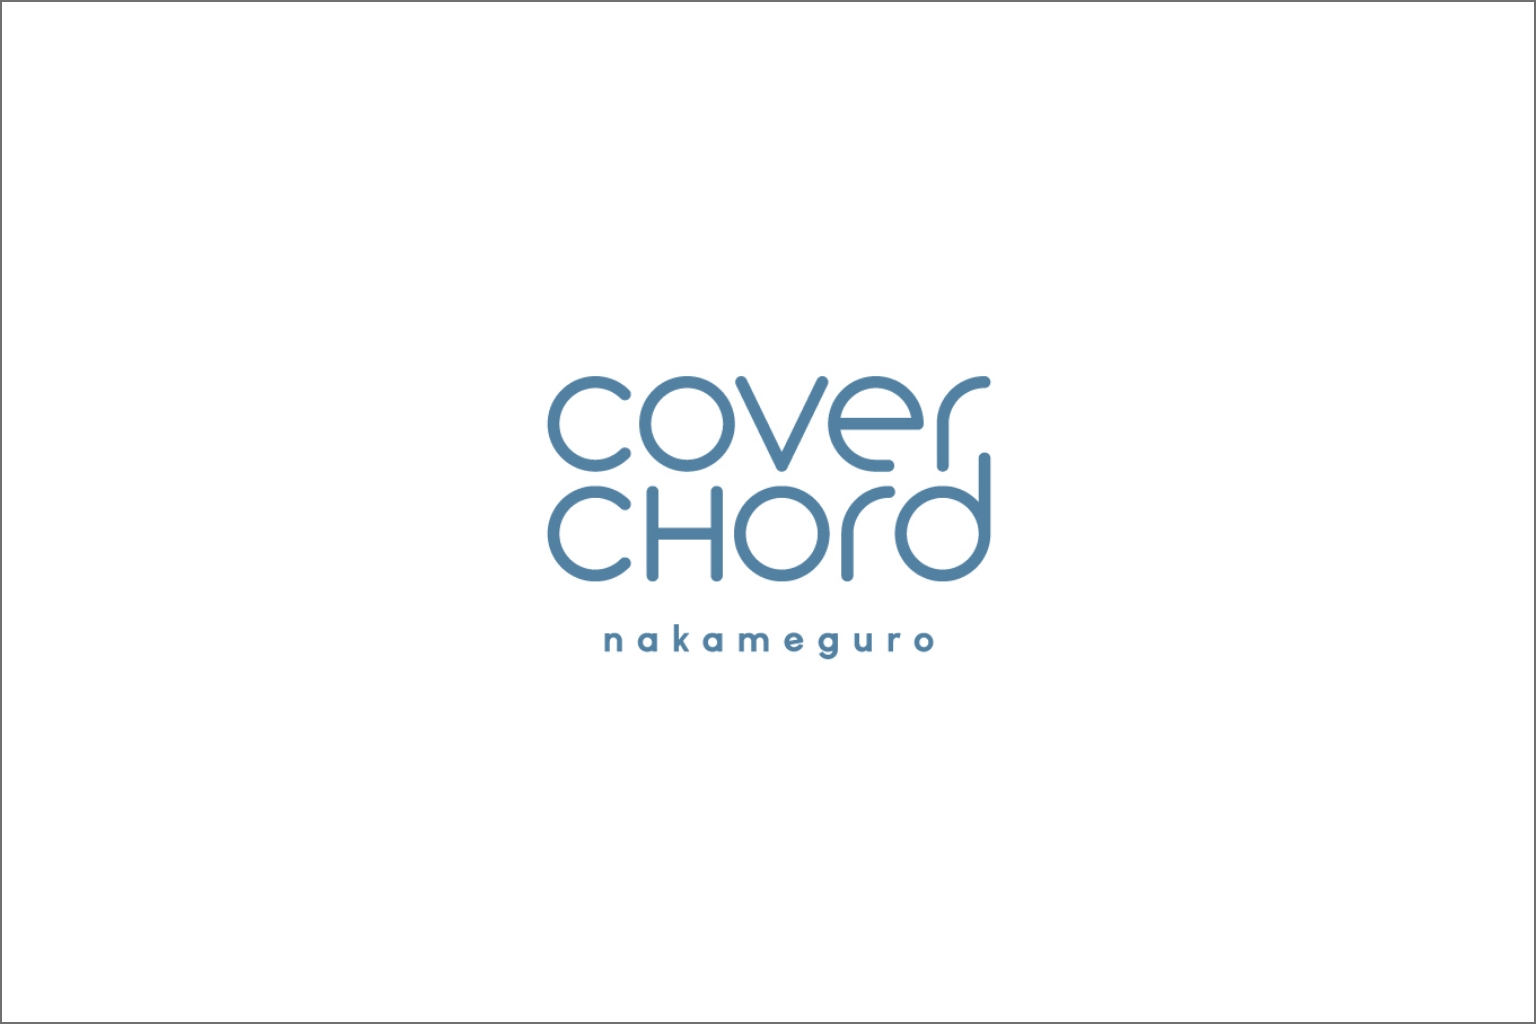 coverchord nakameguro